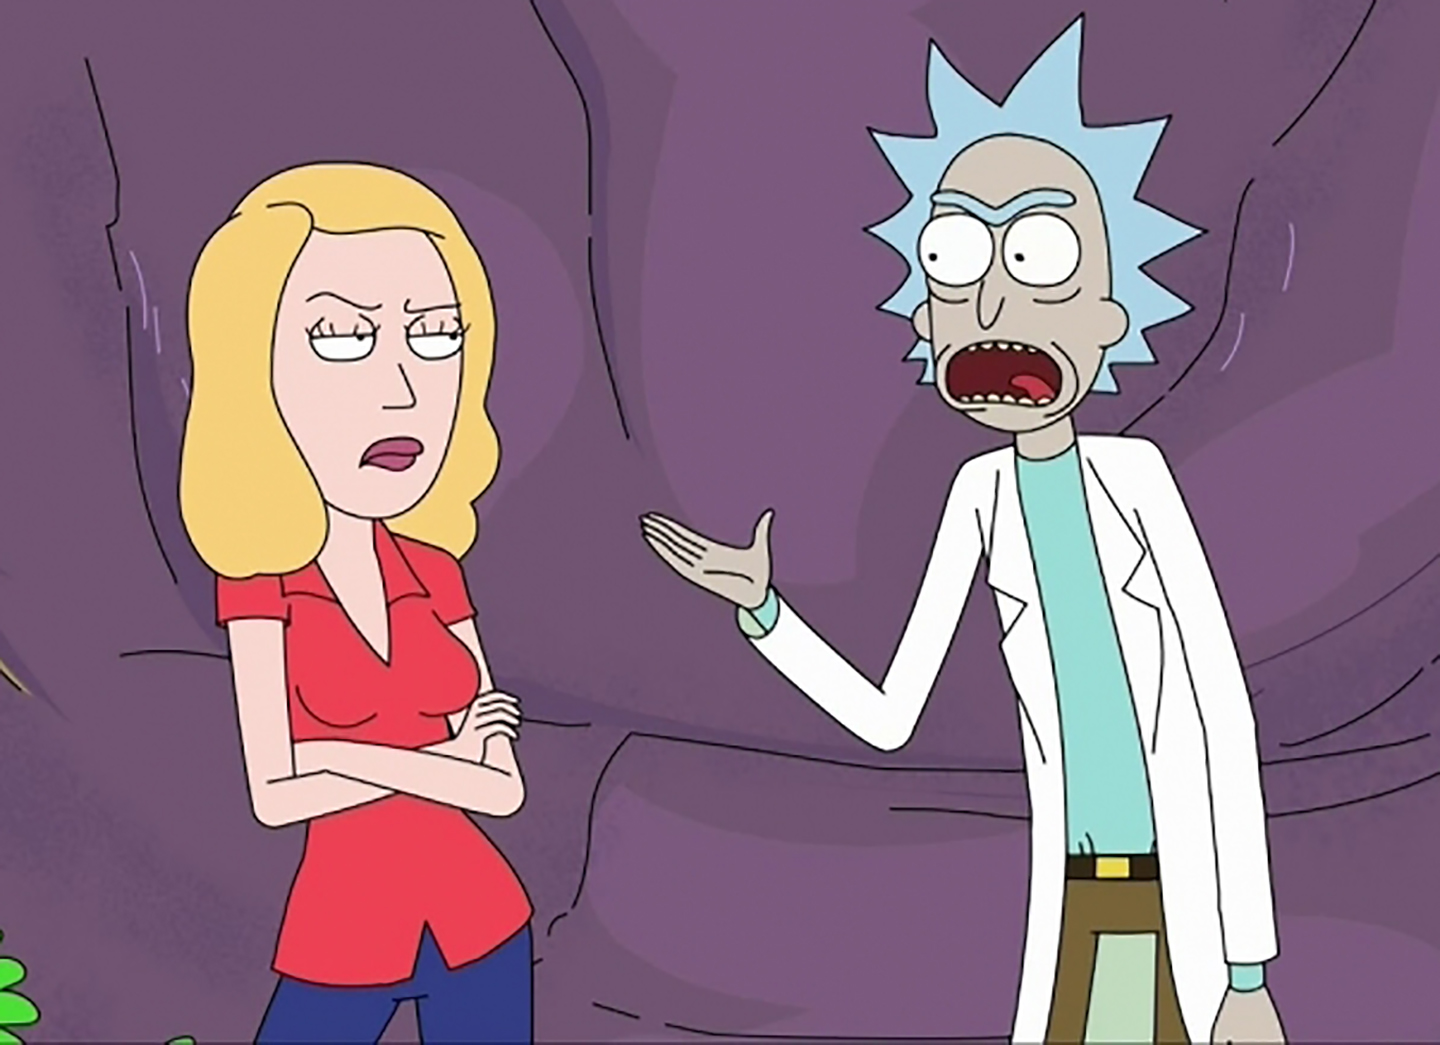 Onde assistir a Rick and Morty? Saiba tudo sobre a animação Adult Swim